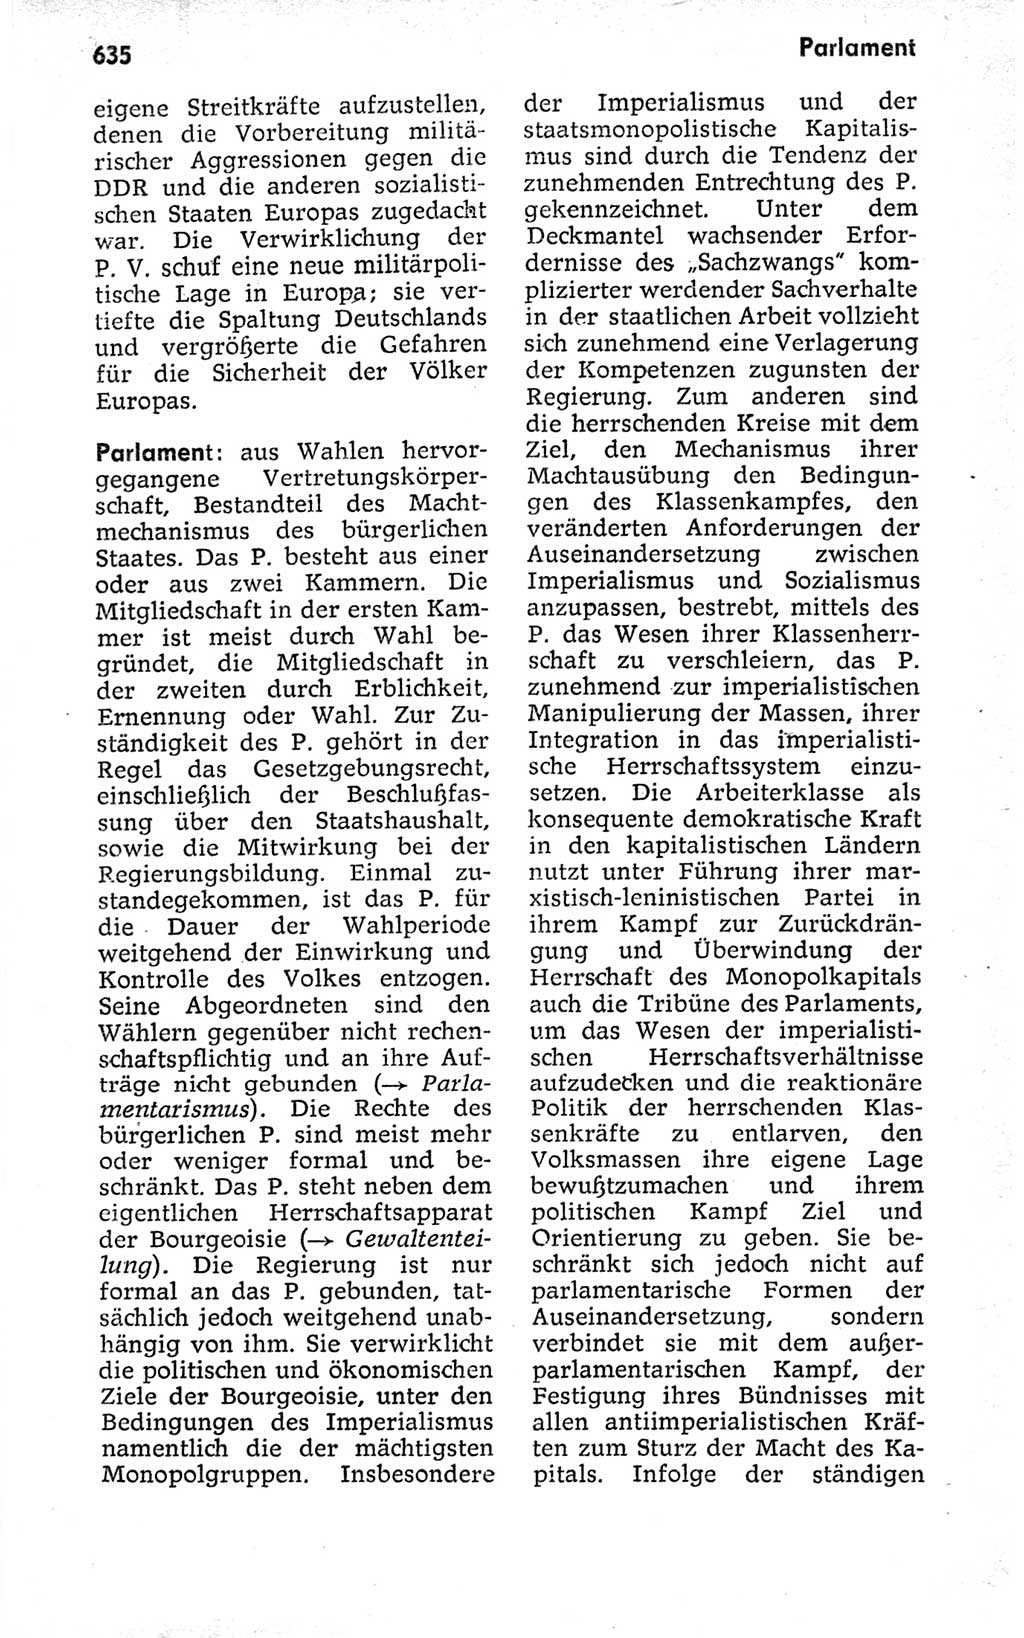 Kleines politisches Wörterbuch [Deutsche Demokratische Republik (DDR)] 1973, Seite 635 (Kl. pol. Wb. DDR 1973, S. 635)